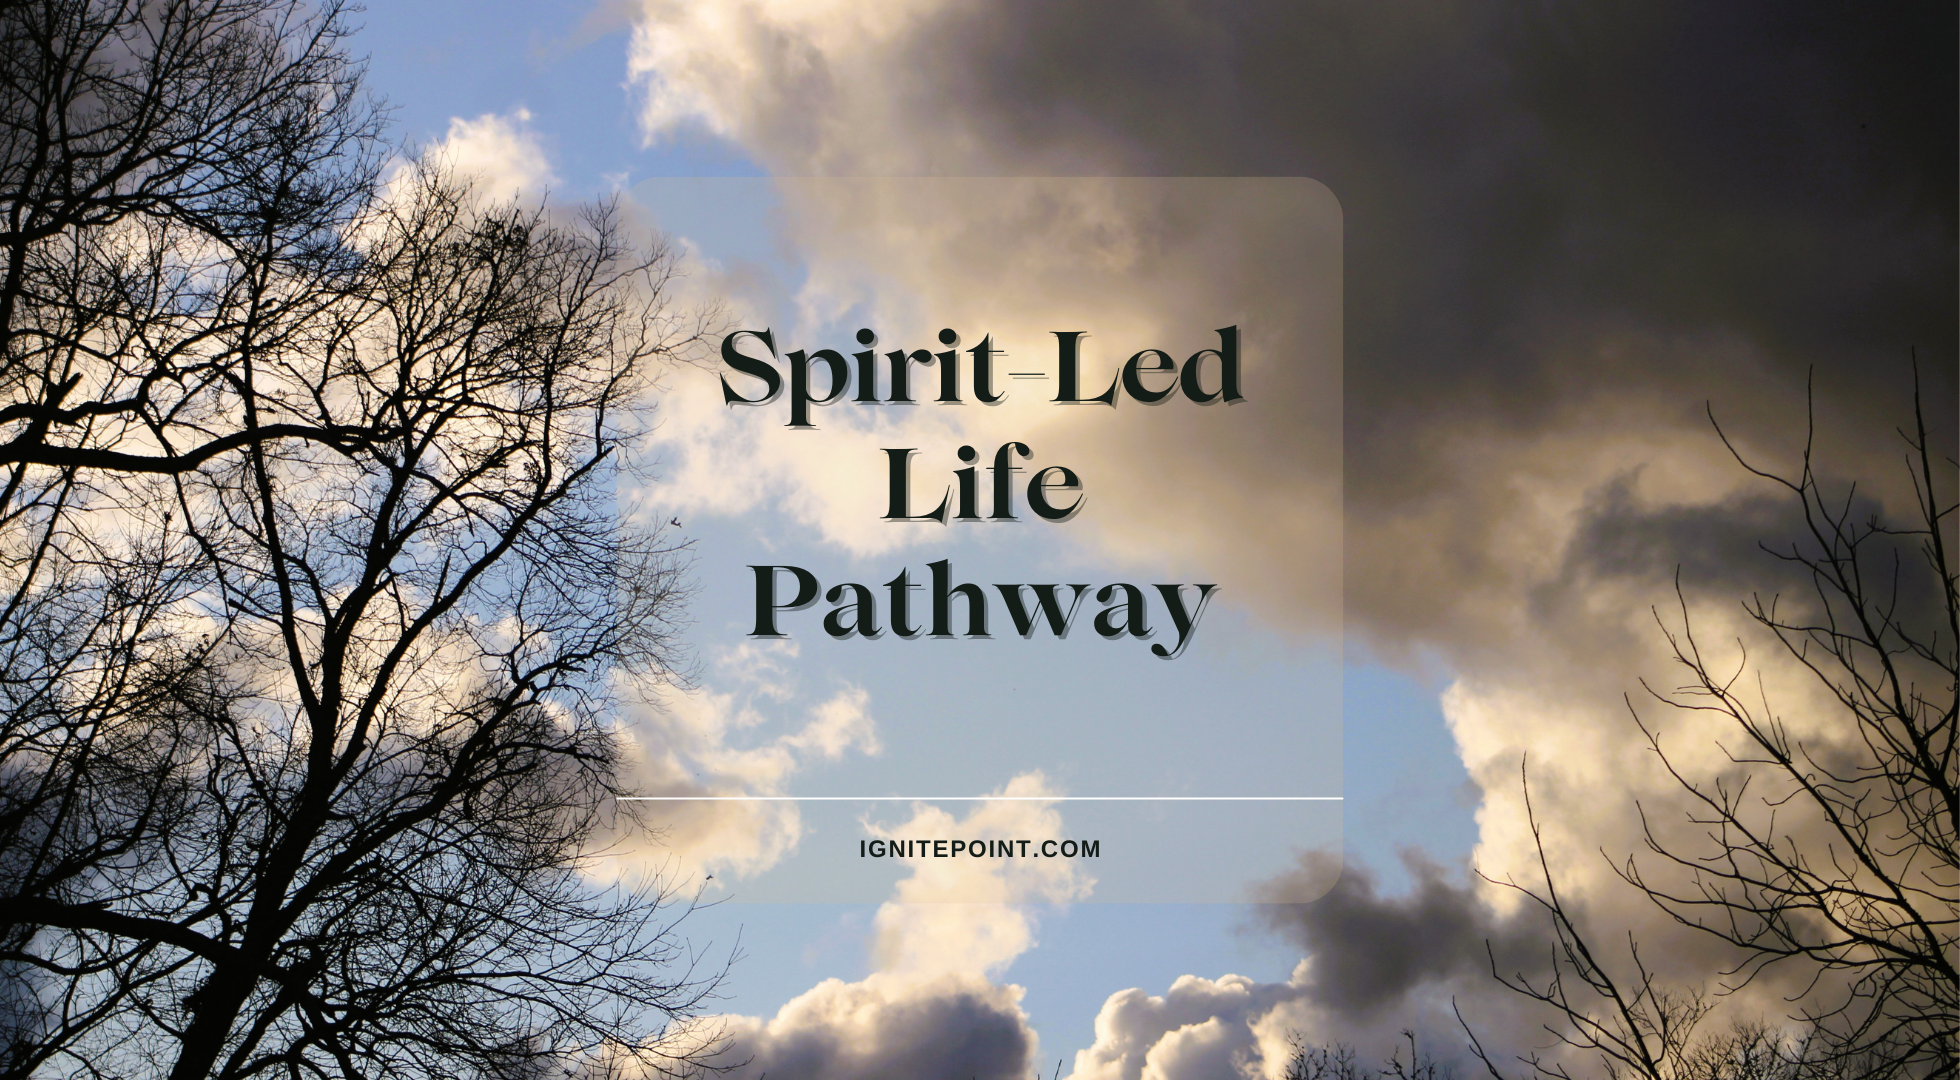 Spirit-Led Life Pathway